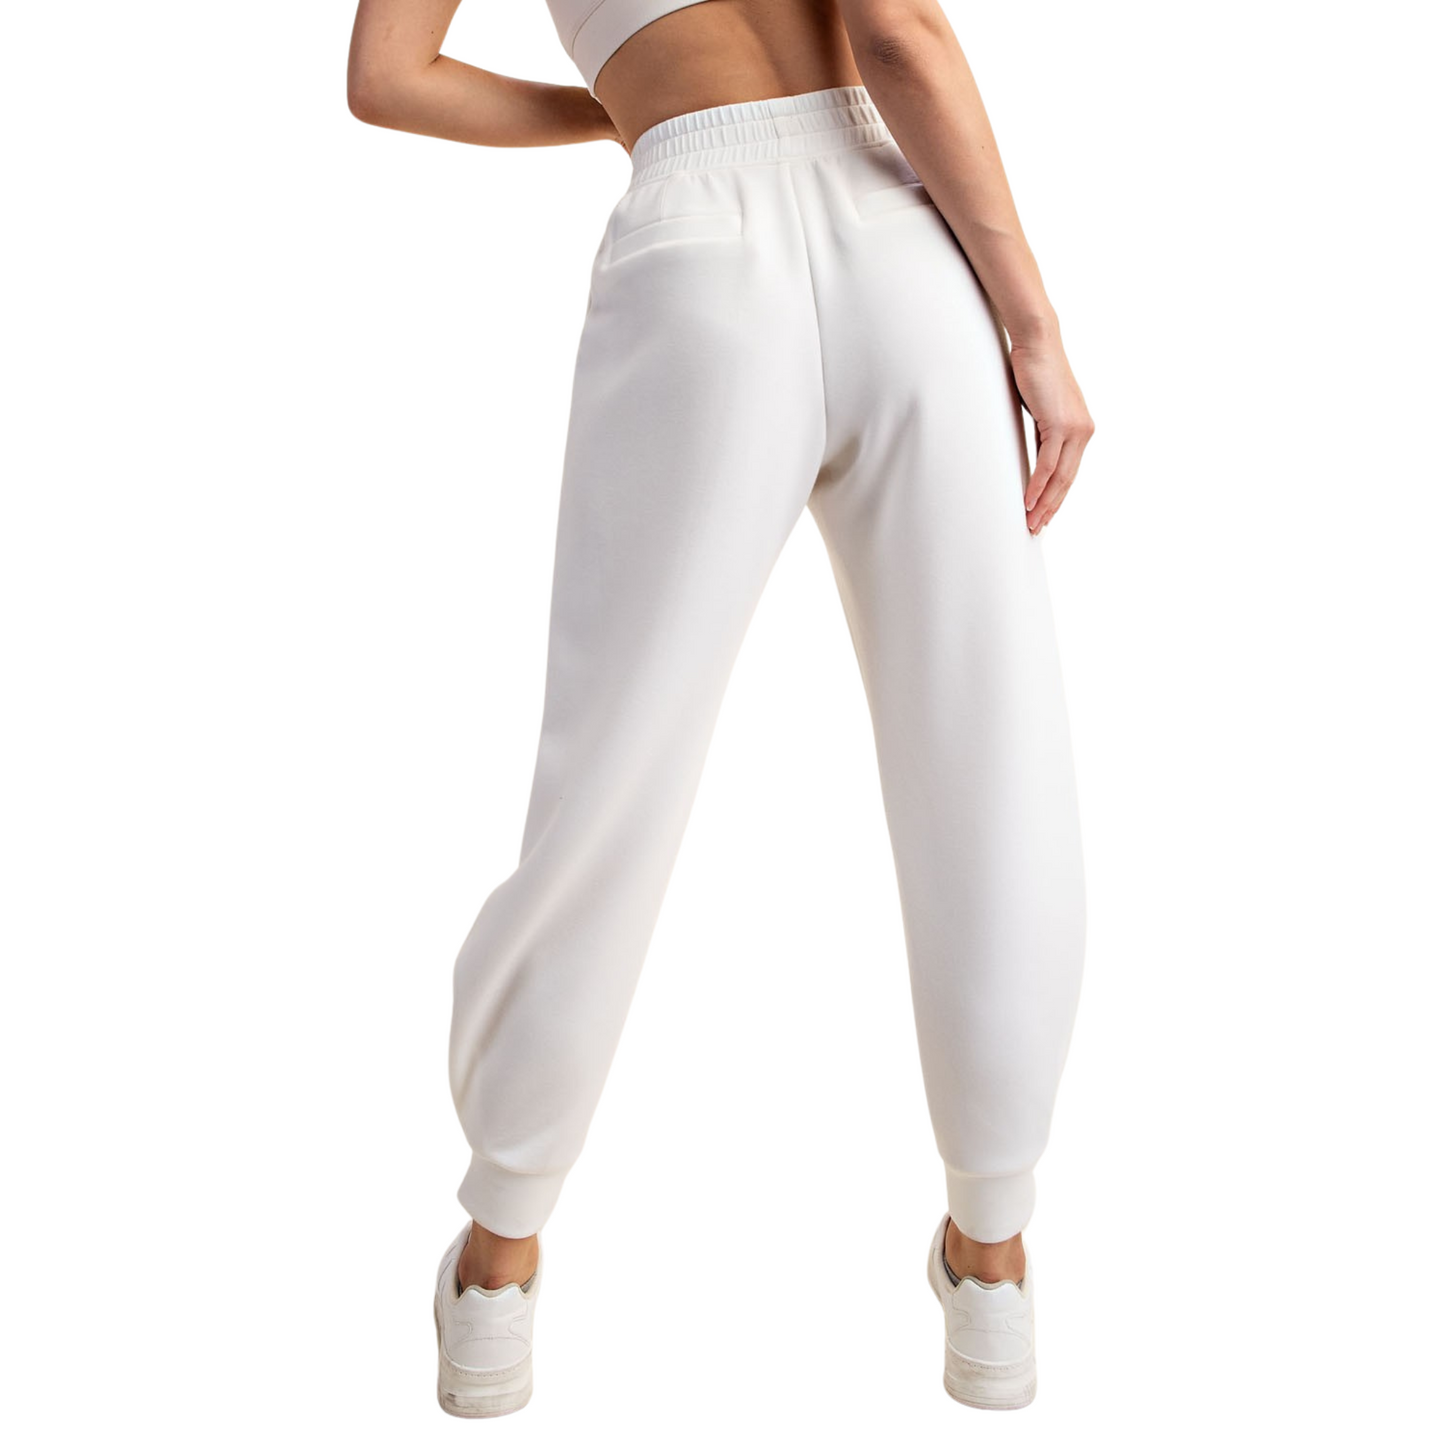 Full length jogger pants in white